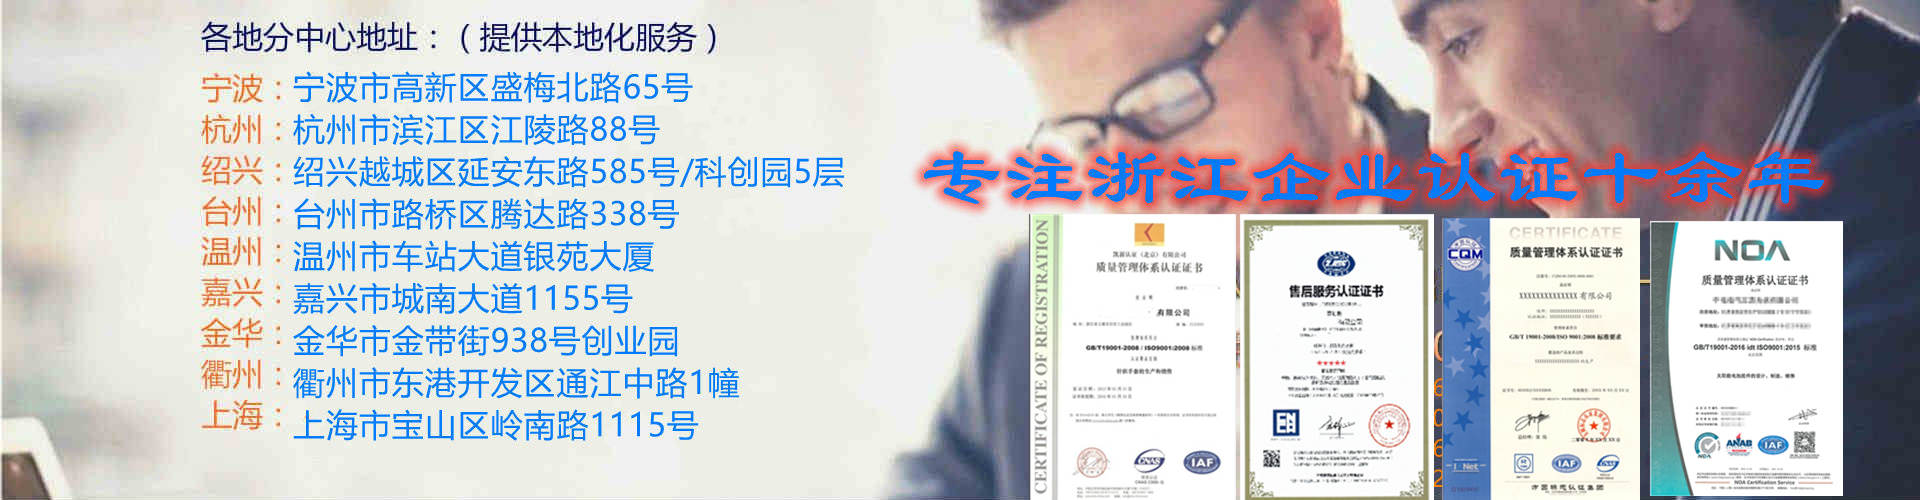 宁波ISO9001认证初审 办理流程